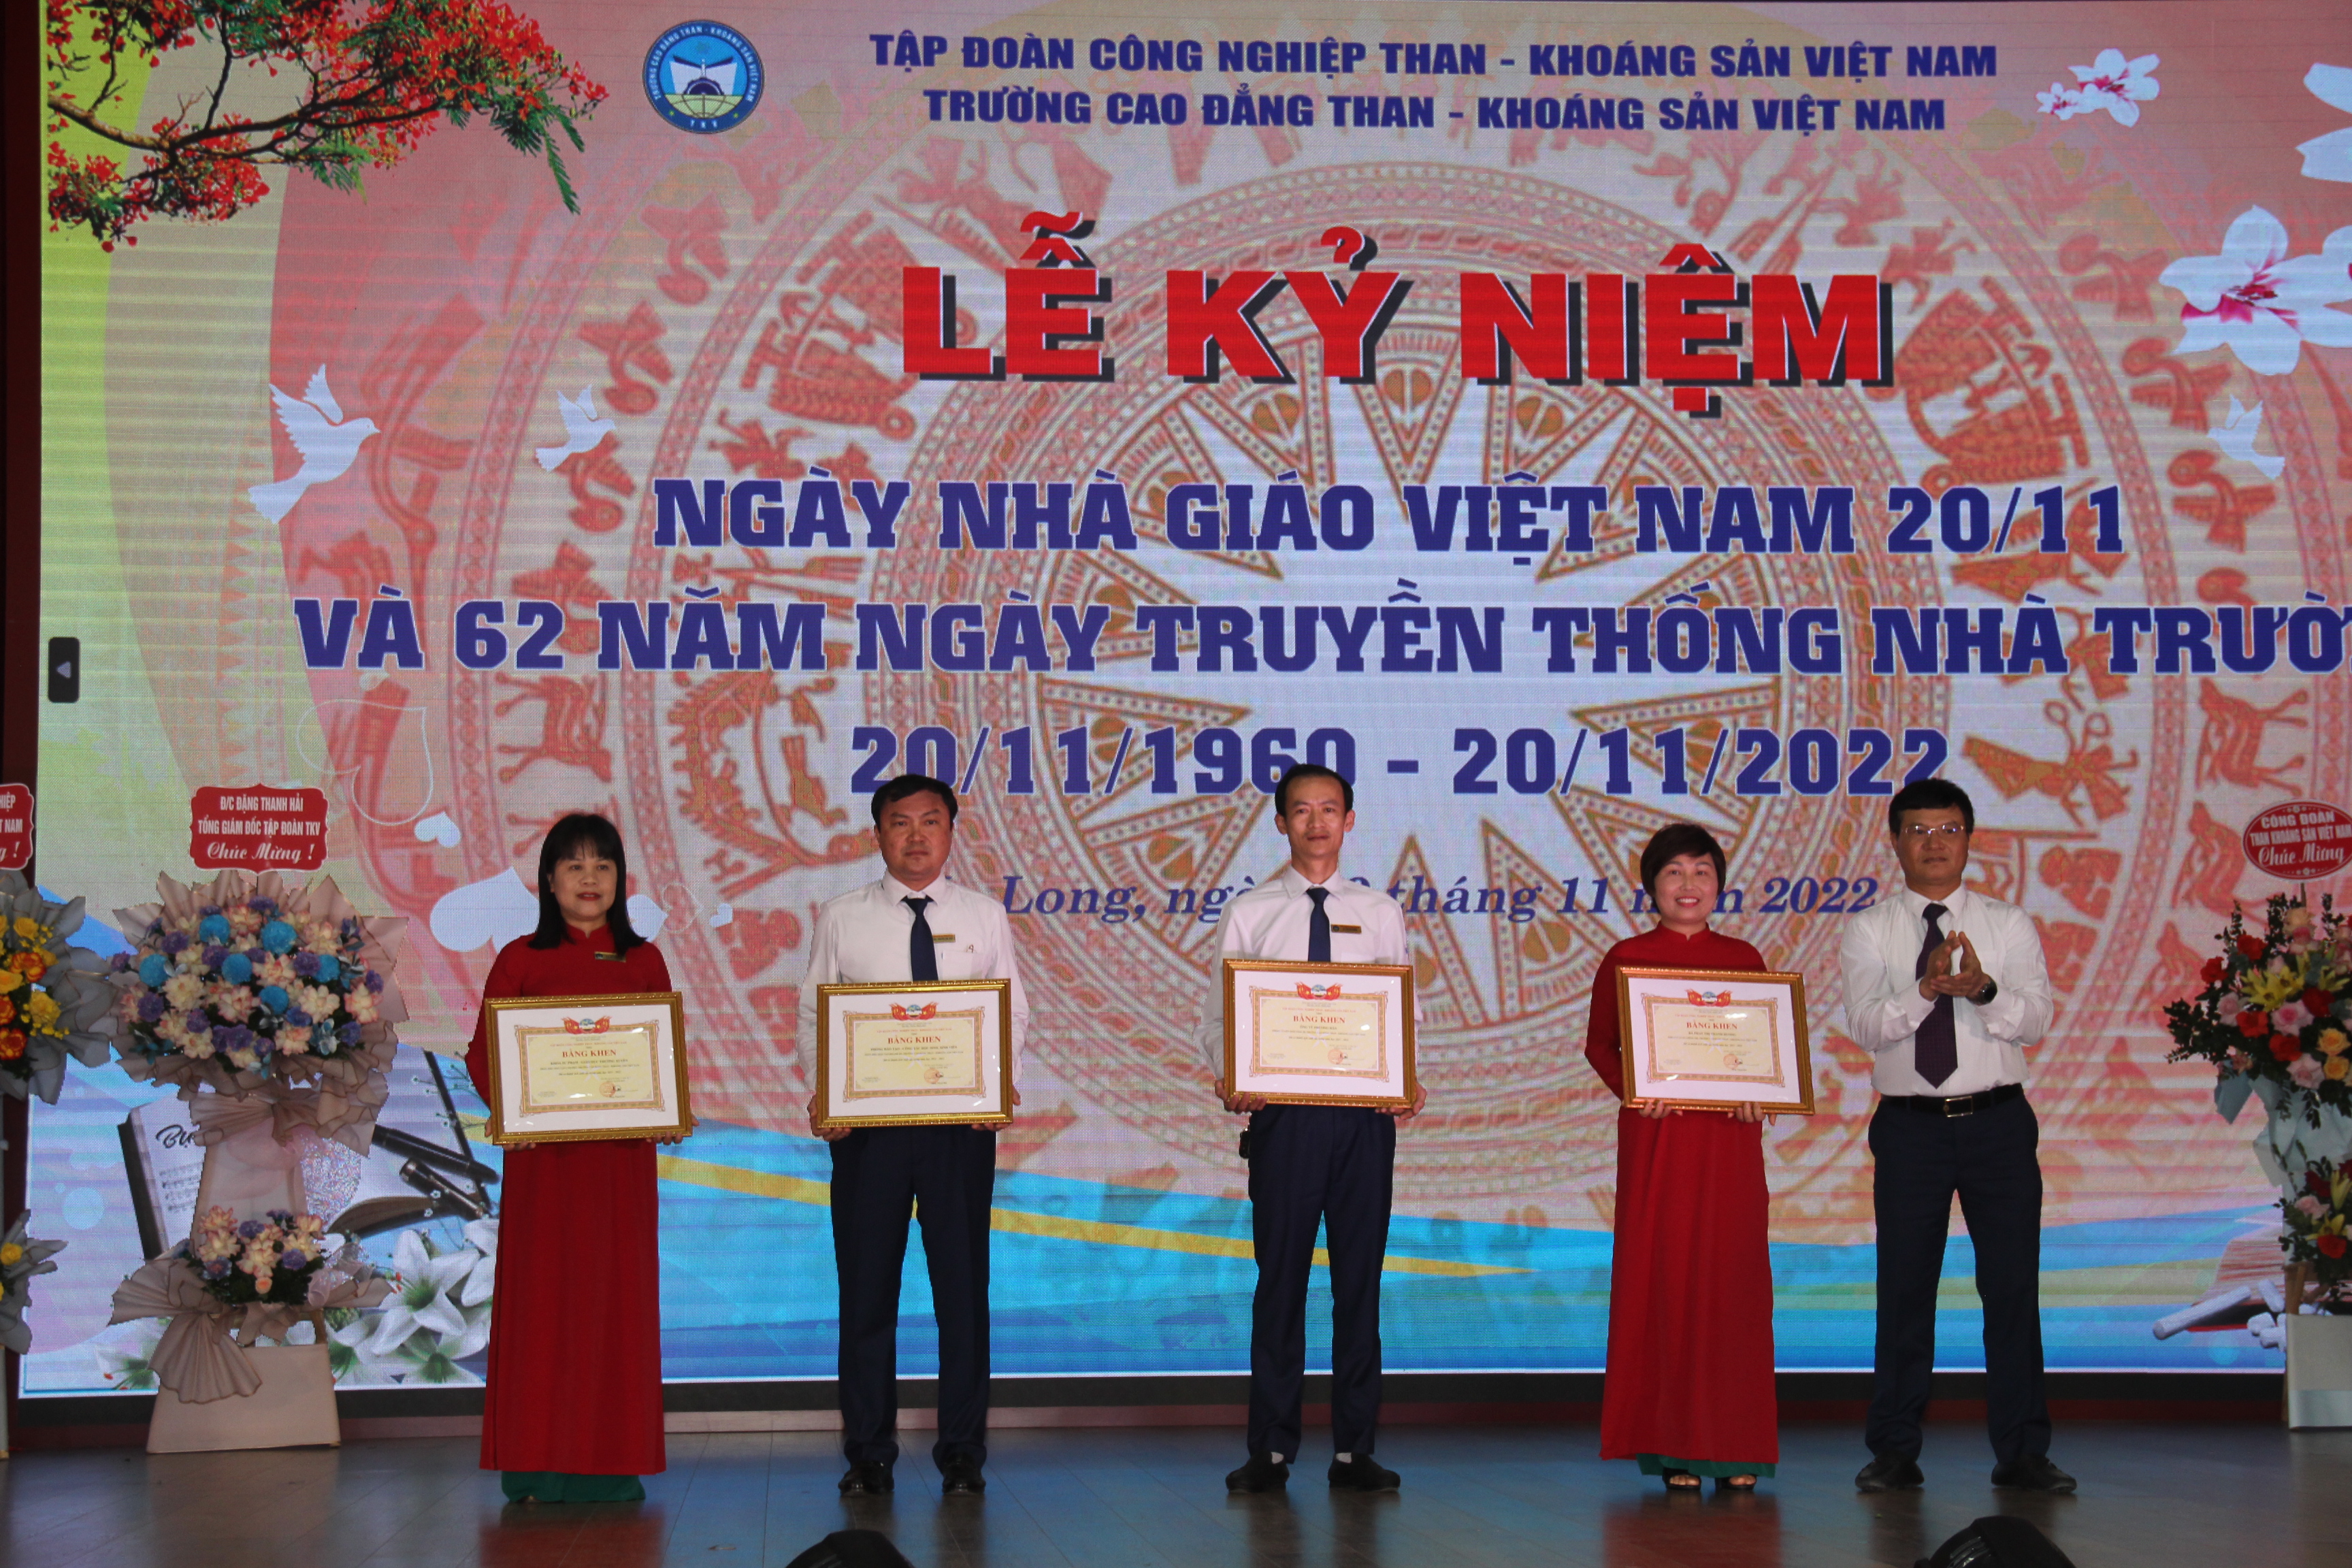 Trường Cao đẳng Than - Khoáng sản Việt Nam kỷ niệm ngày Nhà giáo Việt Nam 20/11 và 62 năm ngày Truyền thống Nhà trường